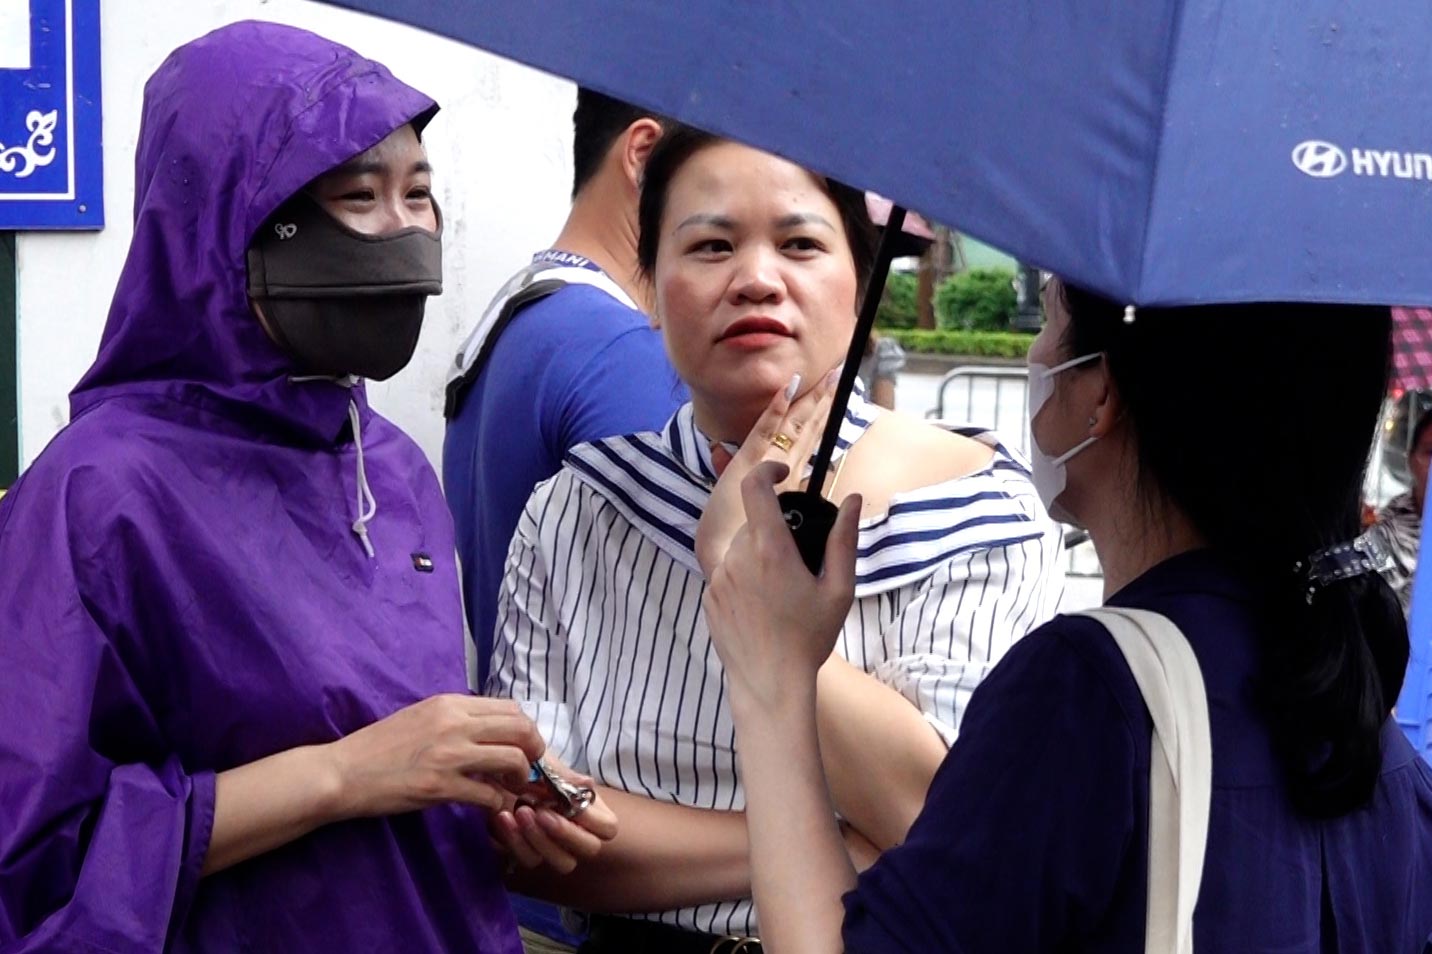 Chị Nguyễn Thị Thu Thuỷ - phụ huynh học sinh tại quận Cầu Giấy - cho biết, vì trời mưa lớn nên gia đình chủ động đưa con tới trường thi từ sớm, tránh sự cố tắc đường hay ngập úng khó di chuyển.